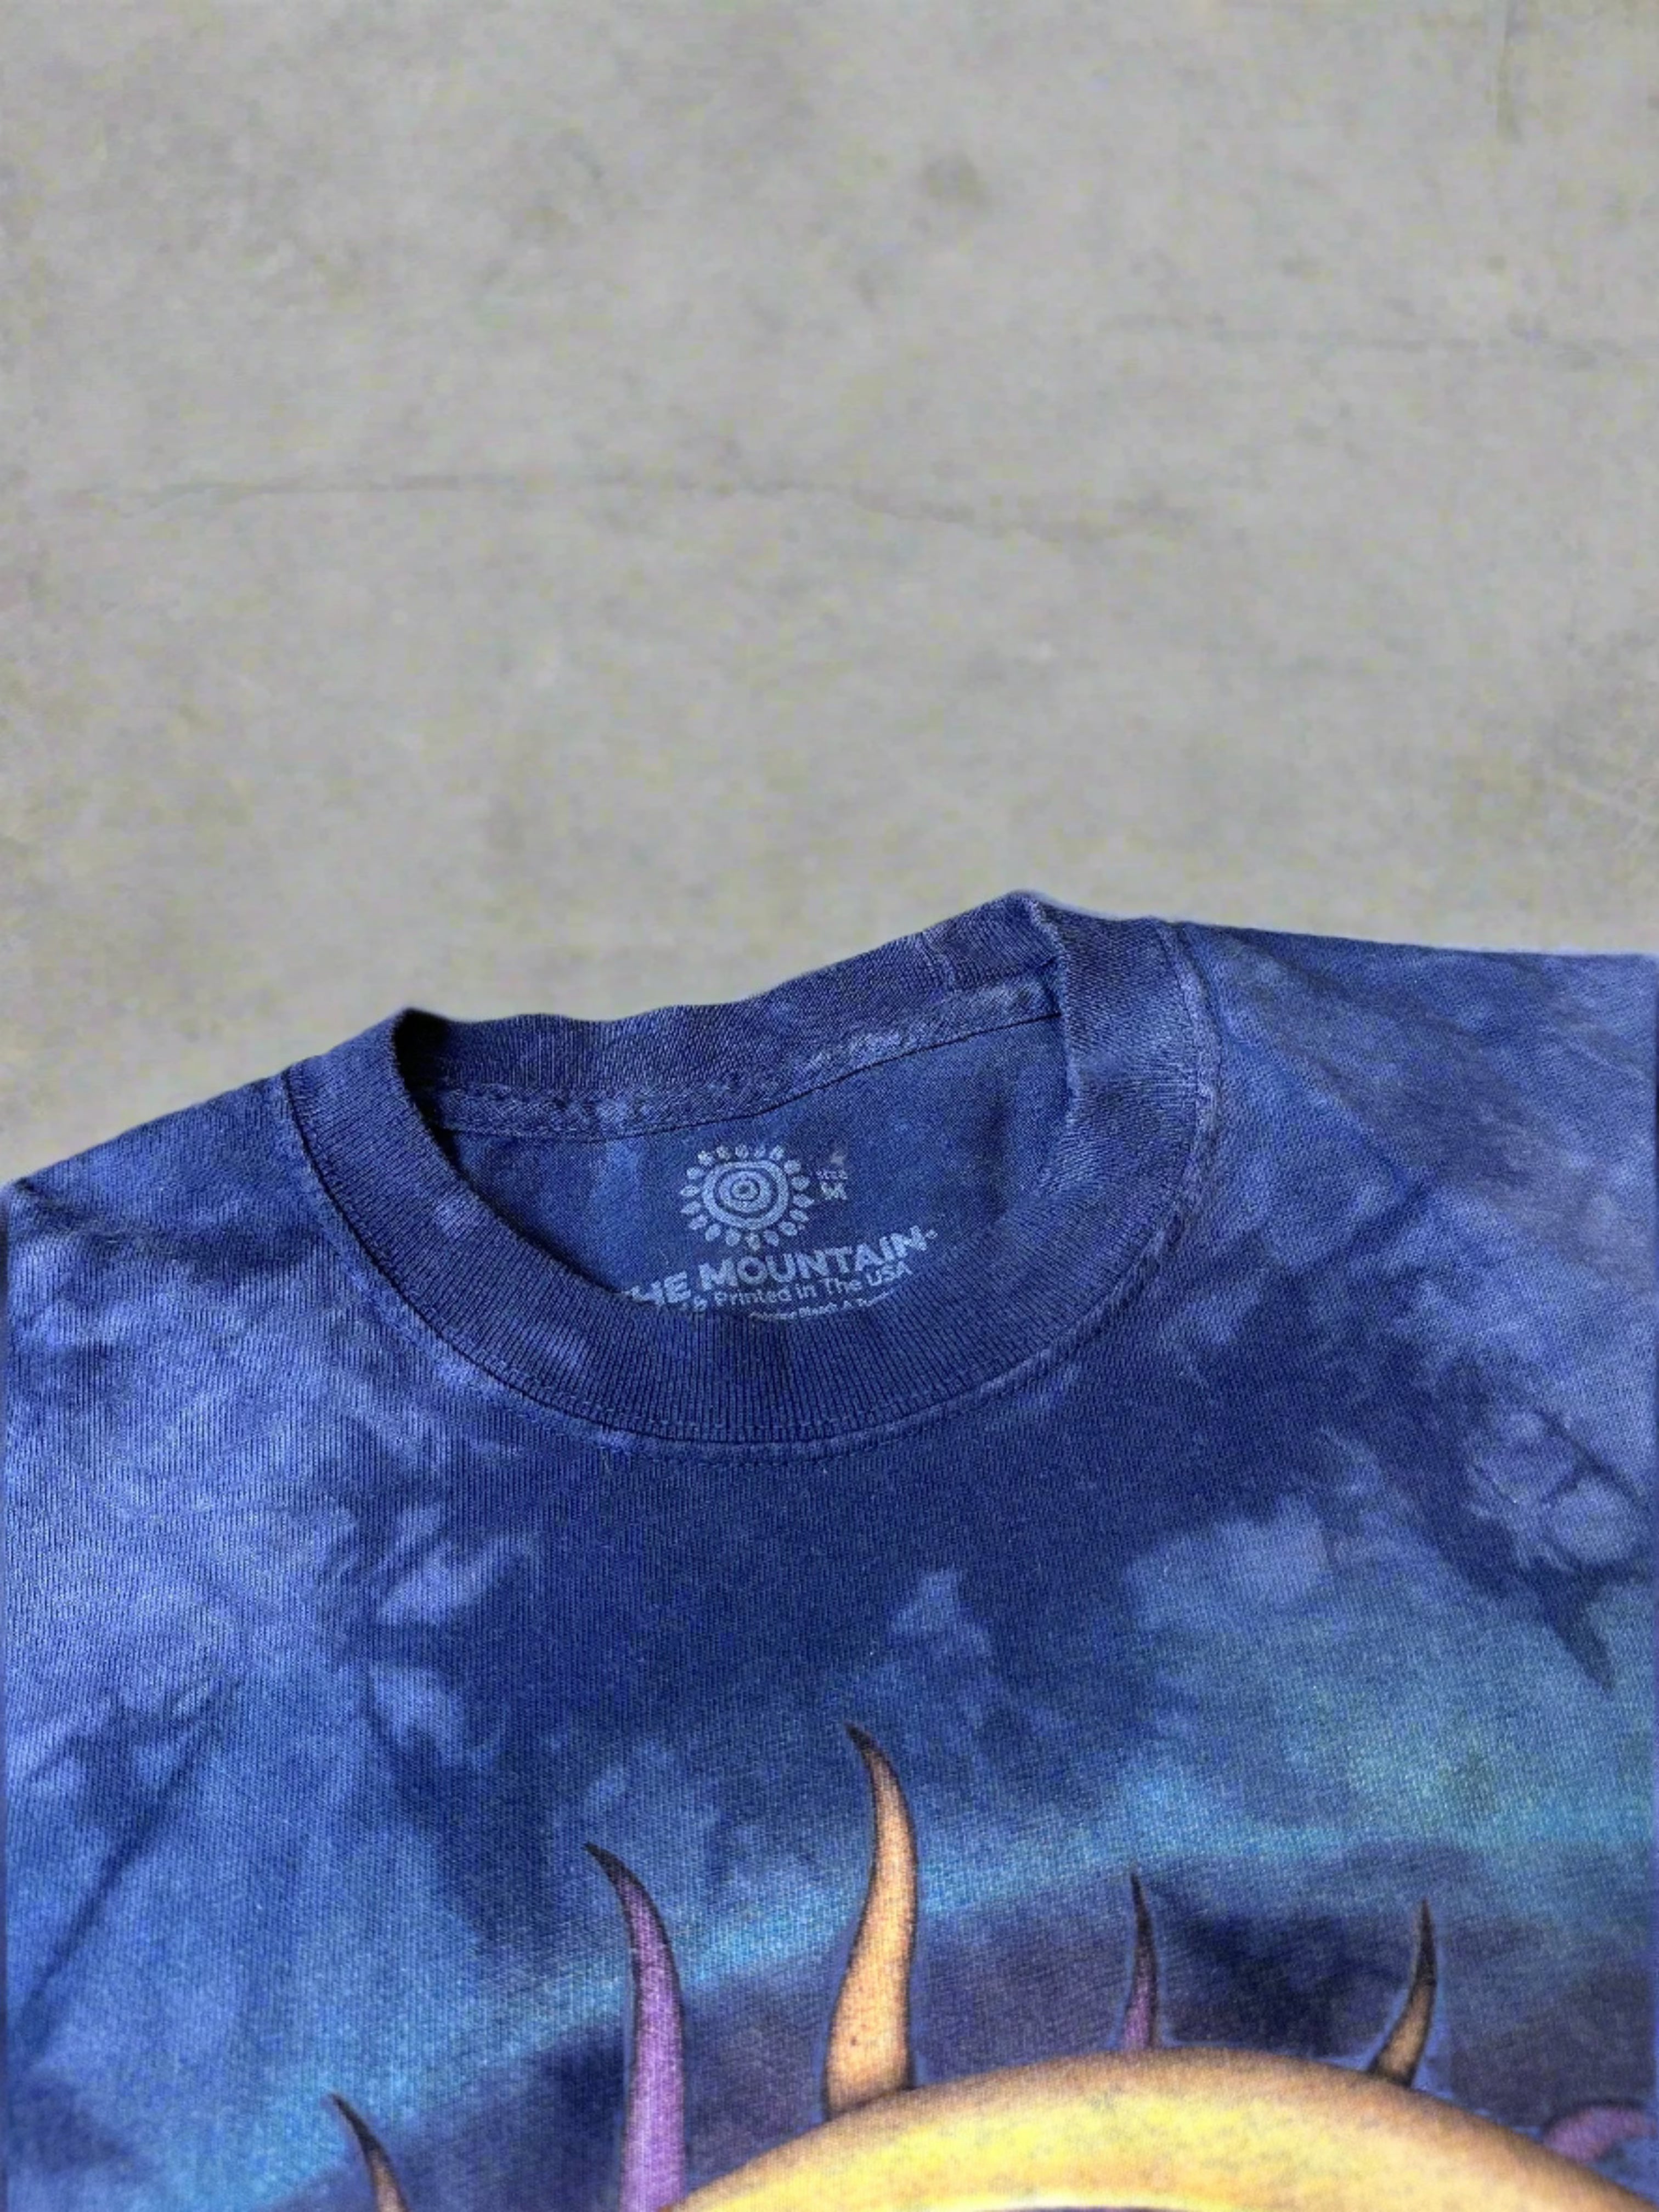 Vintage Moon&Sun T-shirt - size M